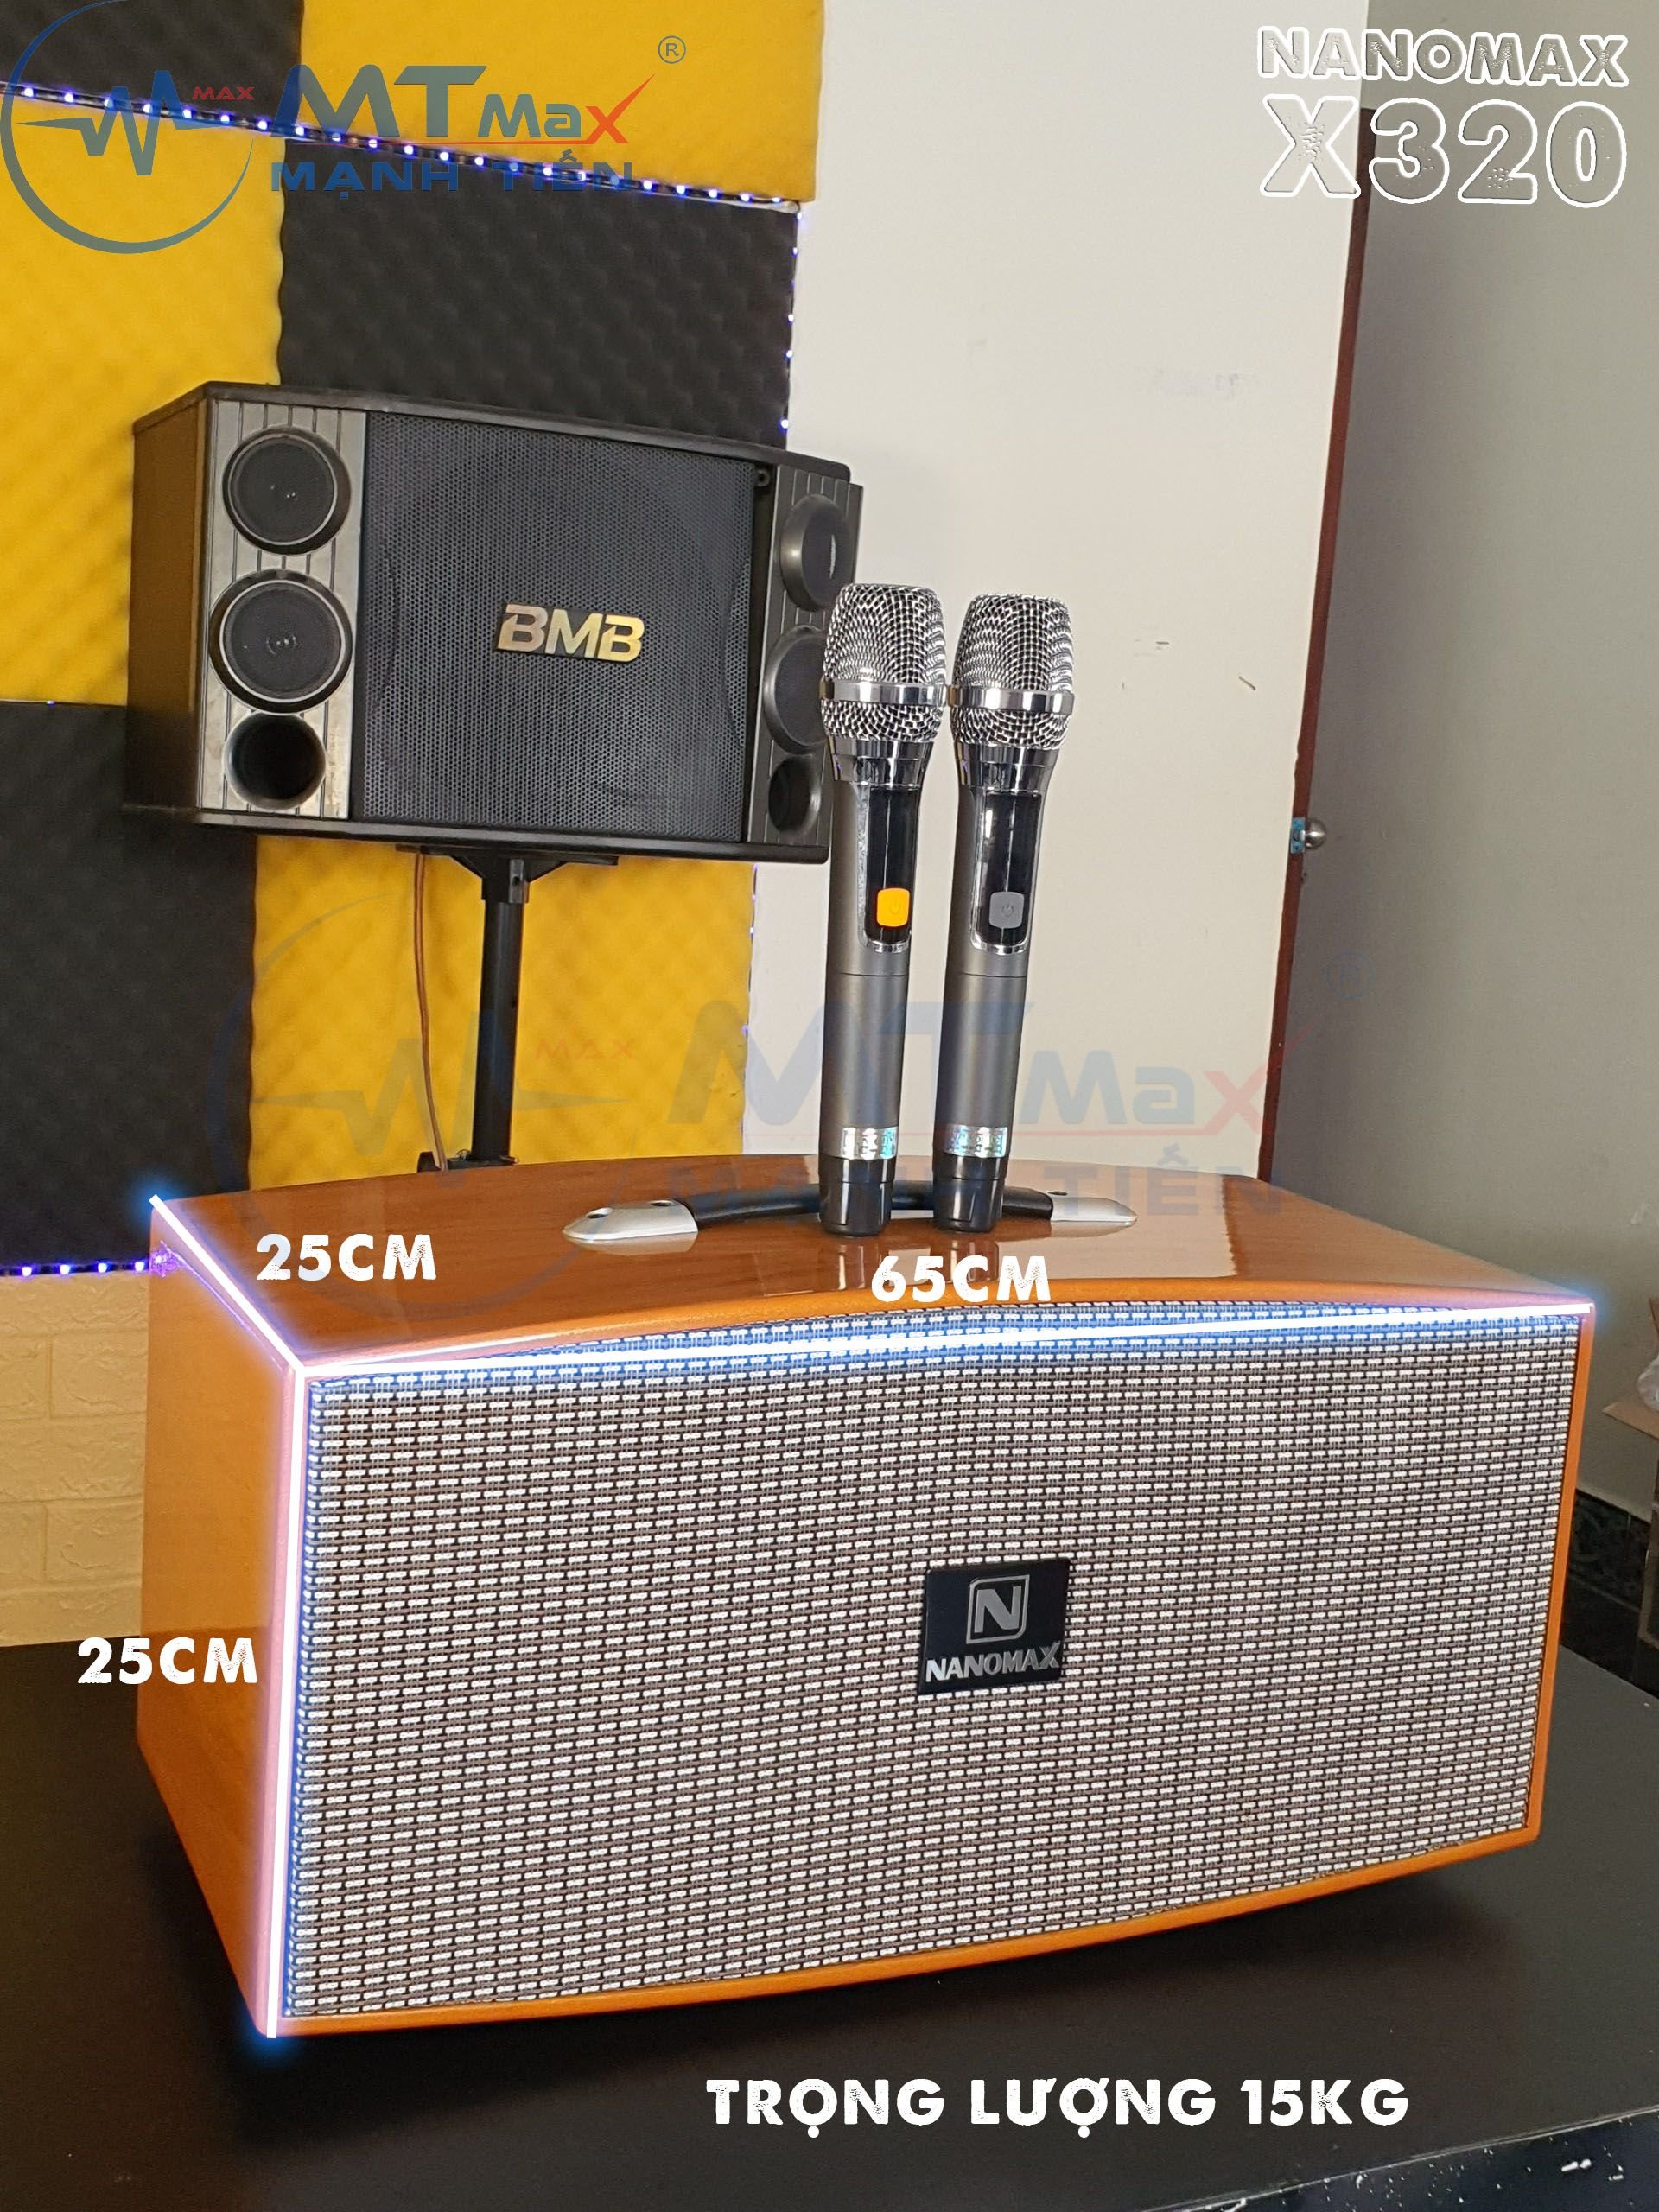 [Hàng mới về giá ưu đãi]Loa karaoke xách tay Nanomax X320 công xuất lớn cực hay nằm trong phân khúc giá tầm trung nhưng lại mang thiết kế nhỏ gọn và đặc biệt với tiếng bass mạnh mẽ, trầm ấm, tiếng treble khi lên cao không bị rú rất phù hợp hát karaoke